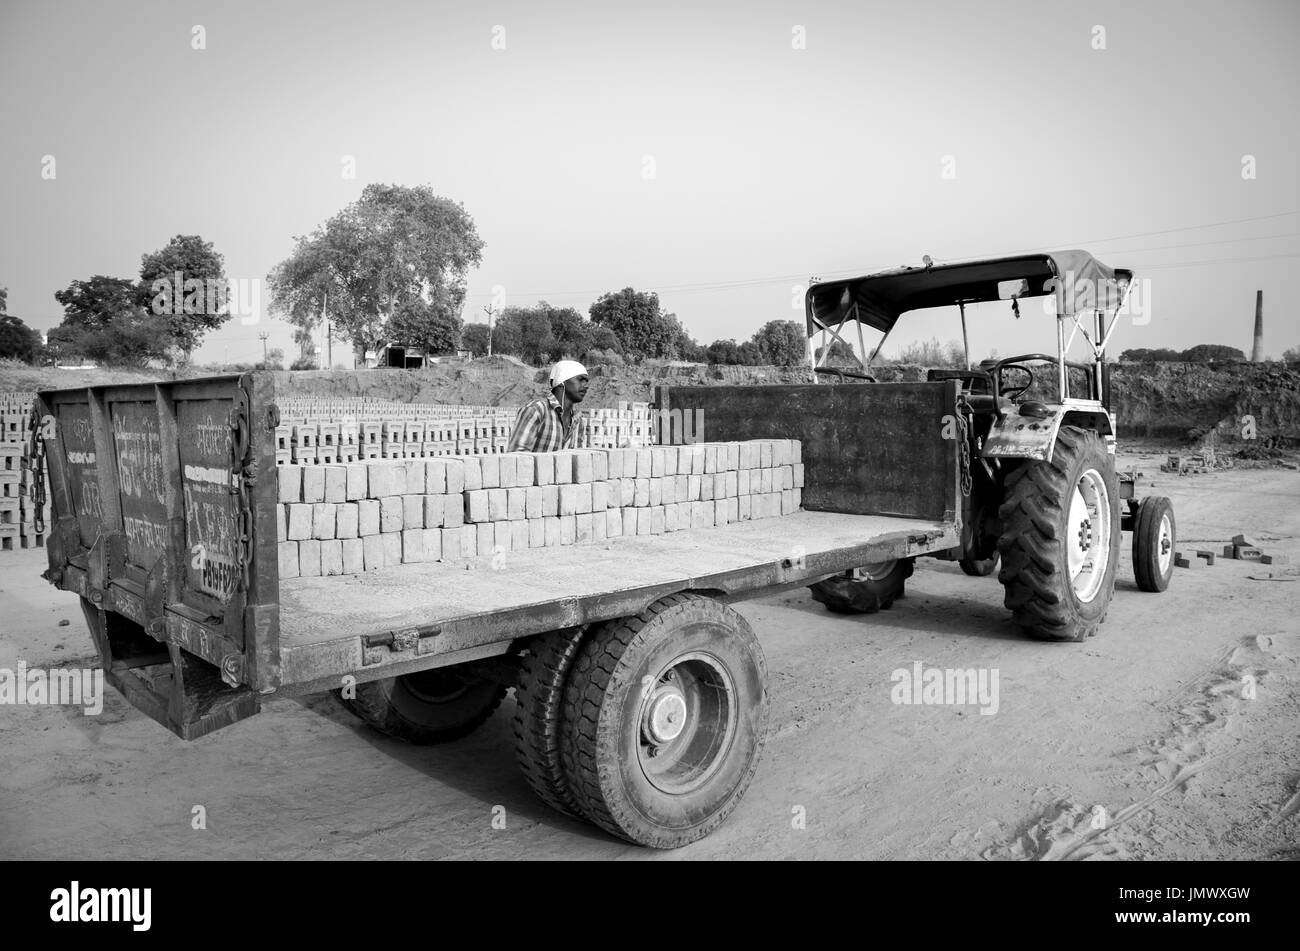 Amritsar, Punjab, Indien - 21. April 2017: Schwarzweiß-Bild von Backsteinen auf einem Lkw, an der ein Arbeitnehmer bereit für einen Großmarkt Versand geladen werden Stockfoto